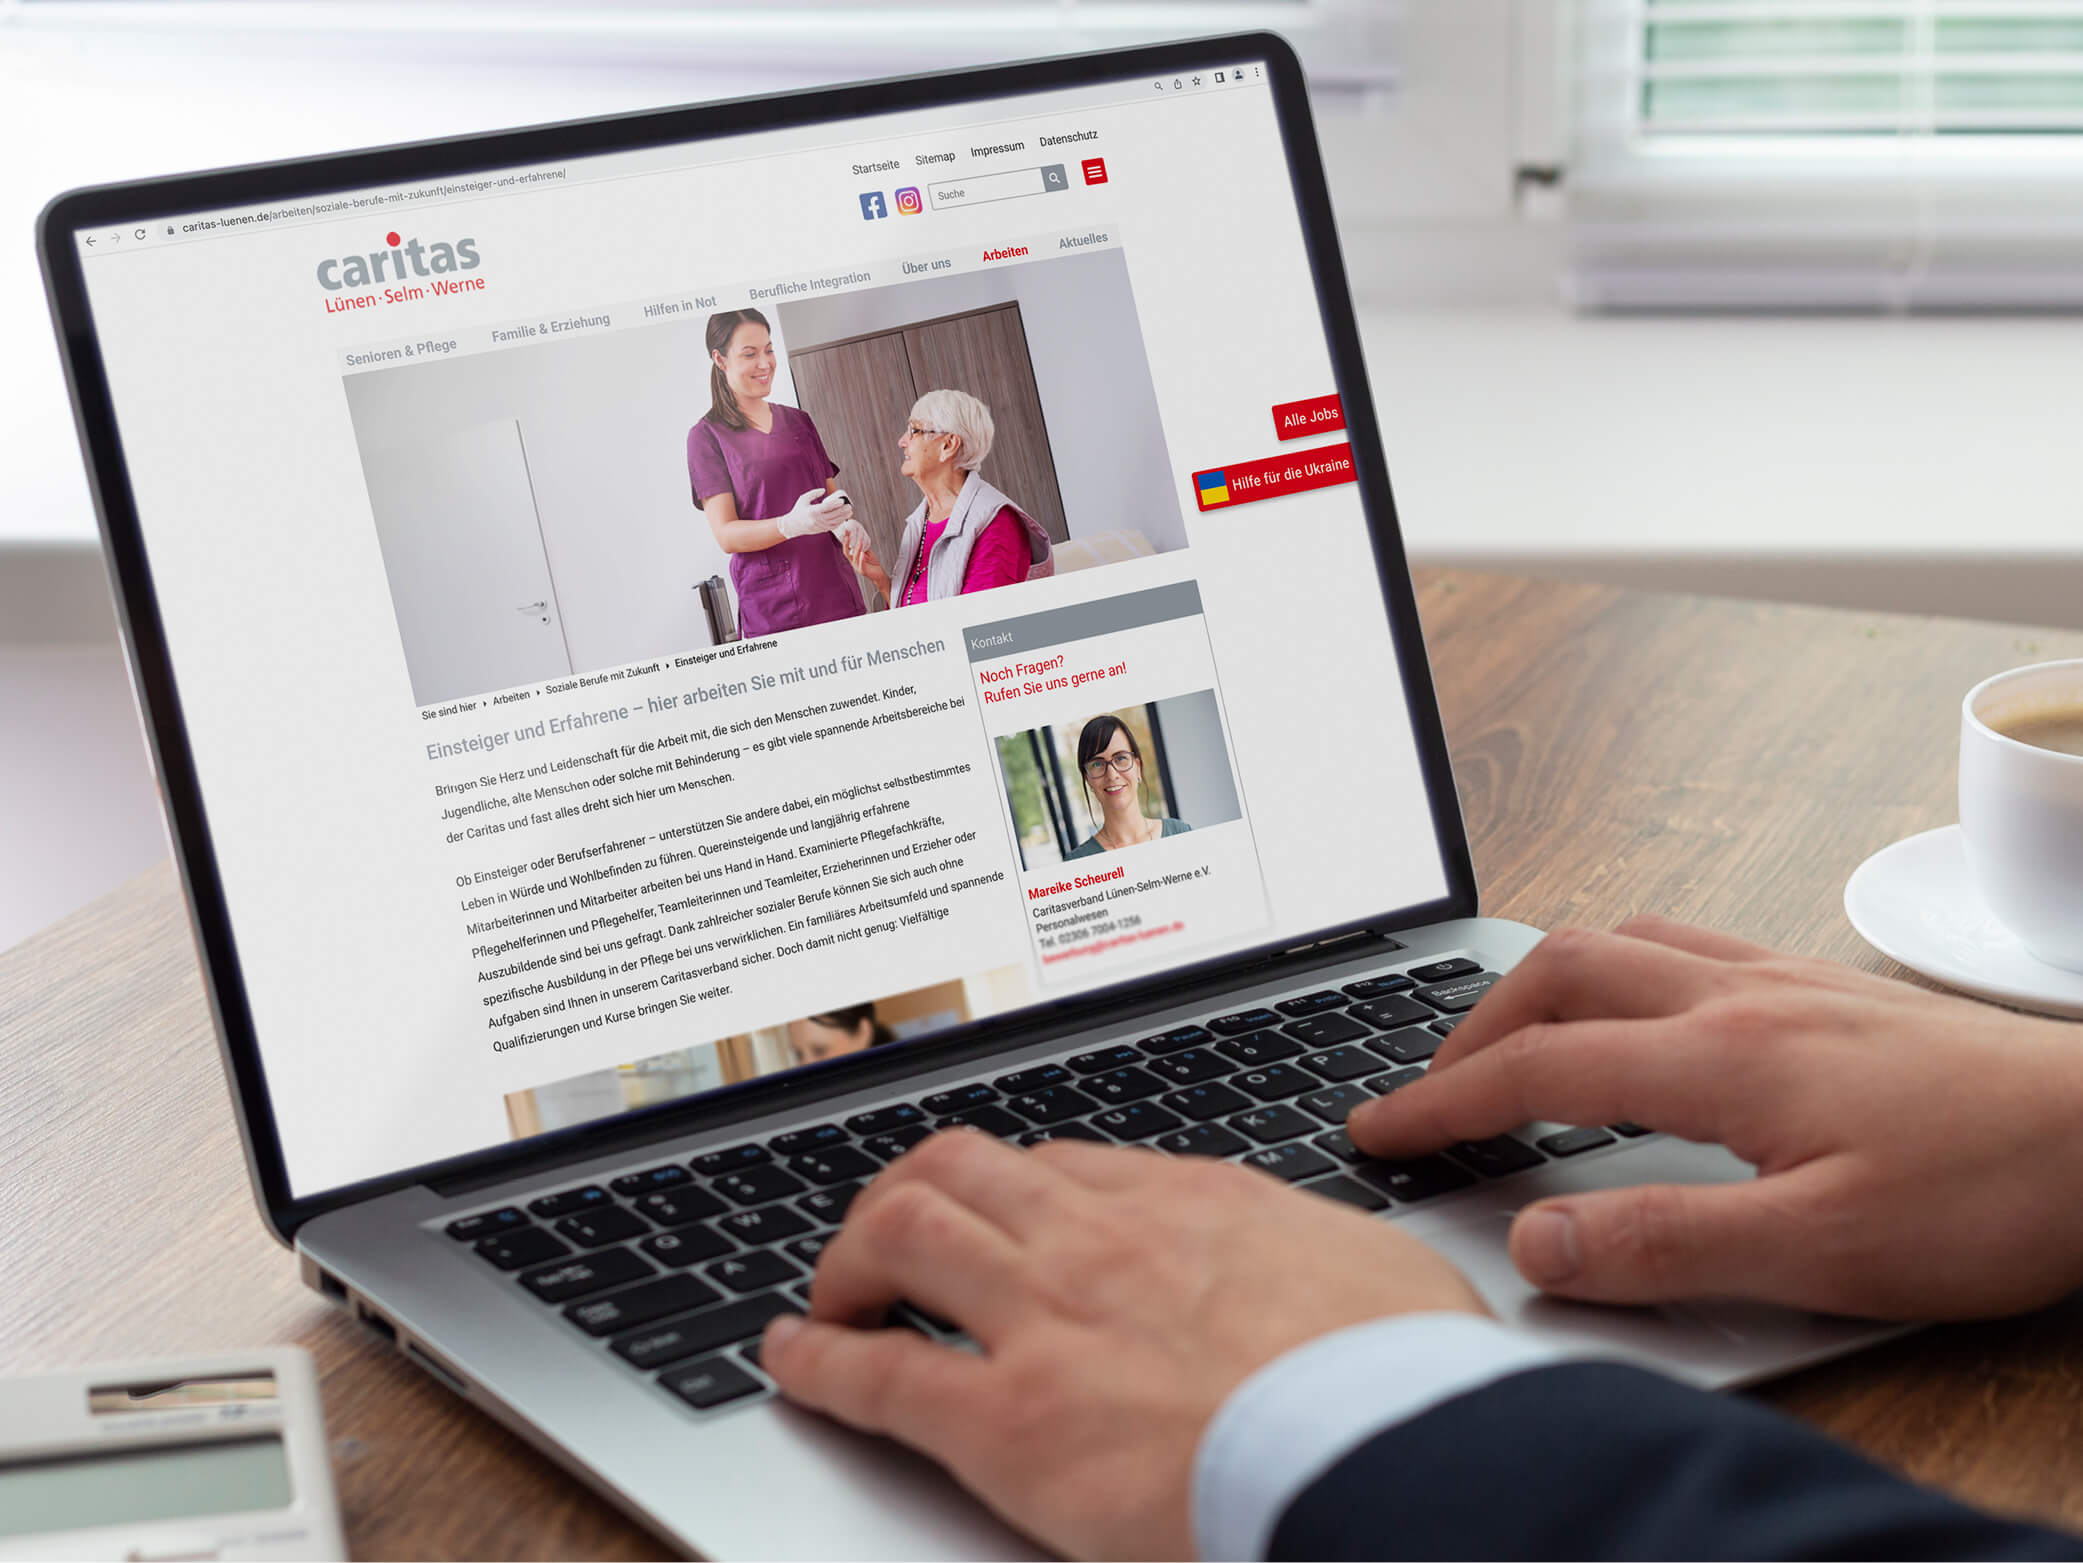 Karrierewebsite der caritas Lünen-Selm-Werne auf Laptop-Bildschirm, Hände tippen darauf